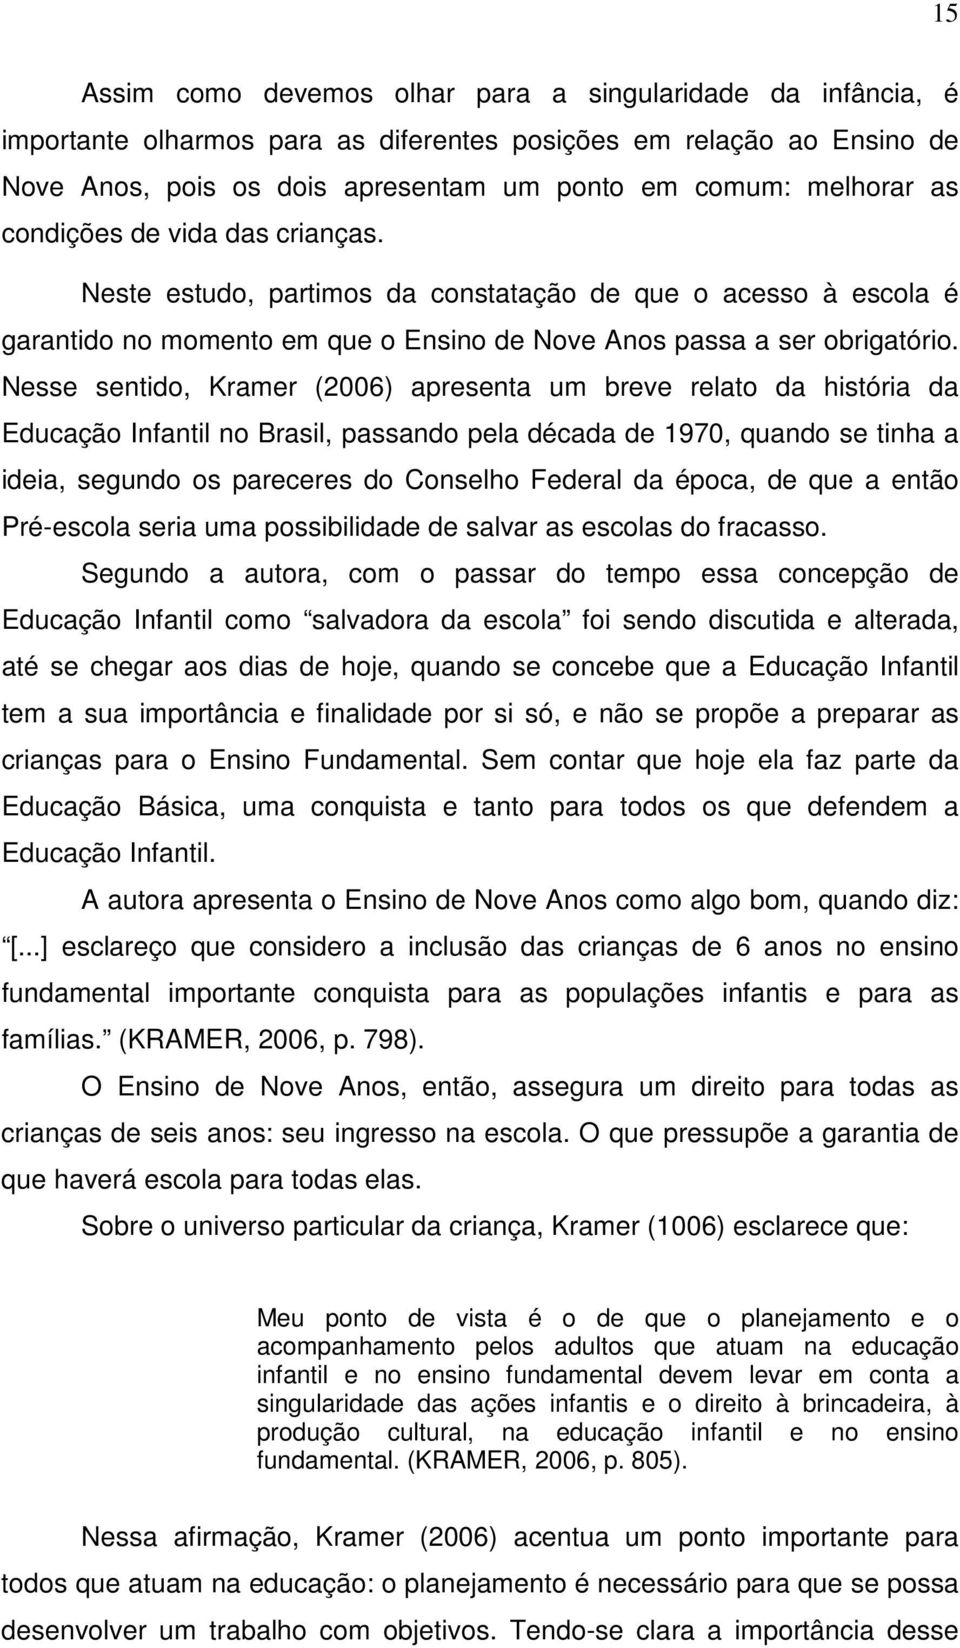 Nesse sentido, Kramer (2006) apresenta um breve relato da história da Educação Infantil no Brasil, passando pela década de 1970, quando se tinha a ideia, segundo os pareceres do Conselho Federal da